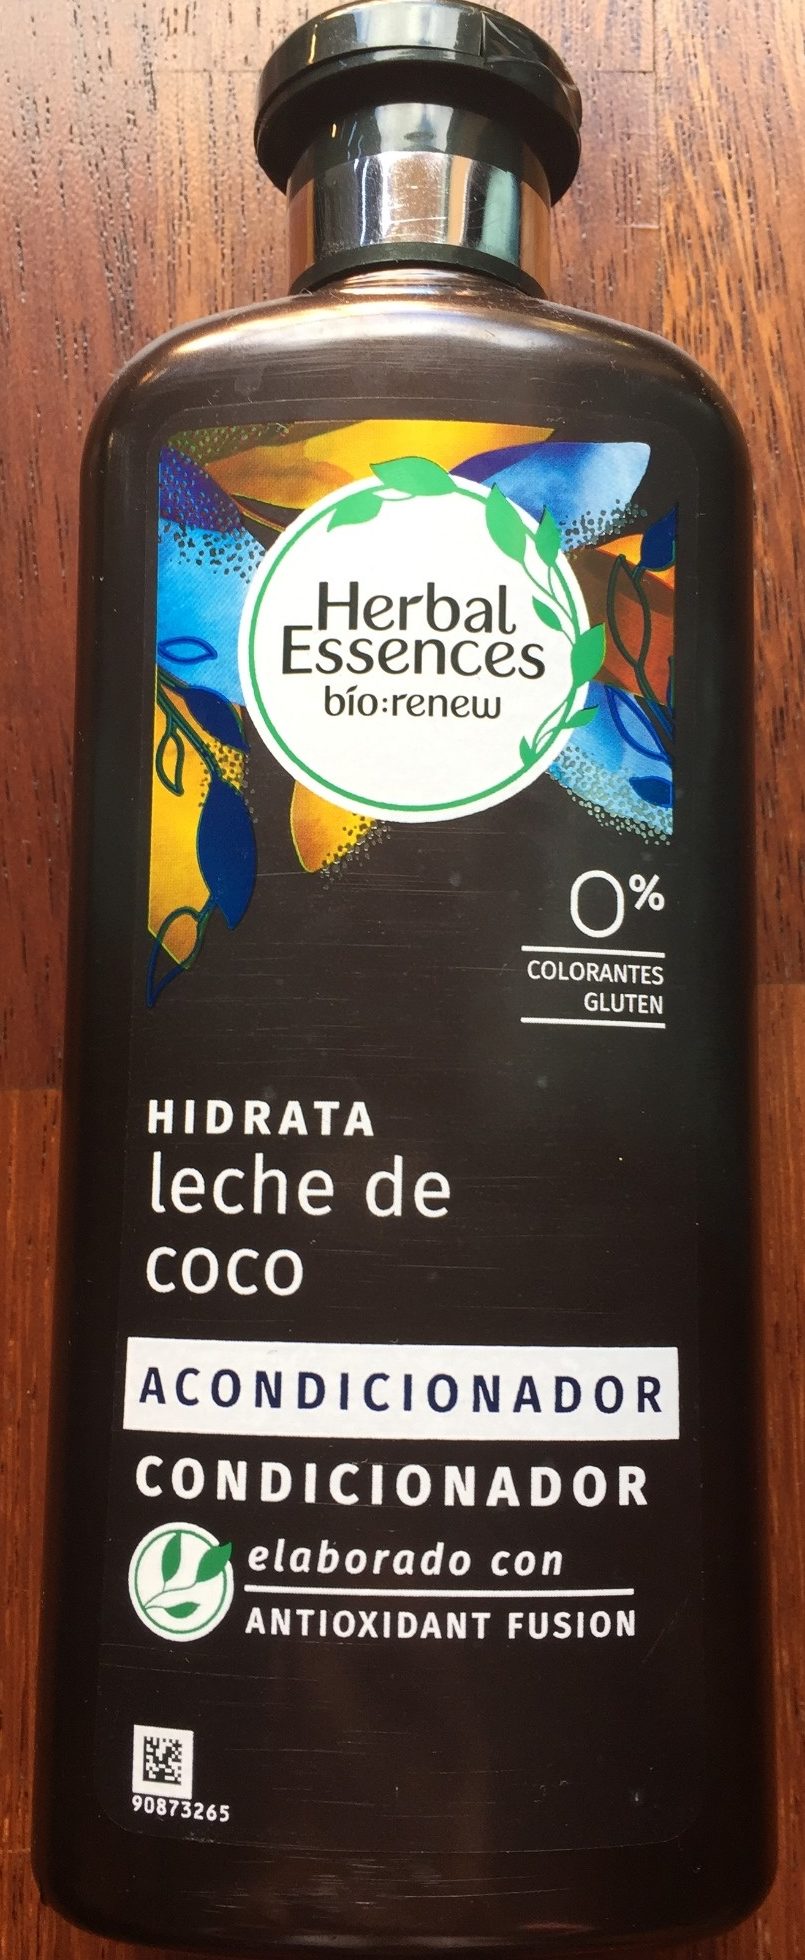 Acondicionador Hidrata Leche de Coco - Tuote - es